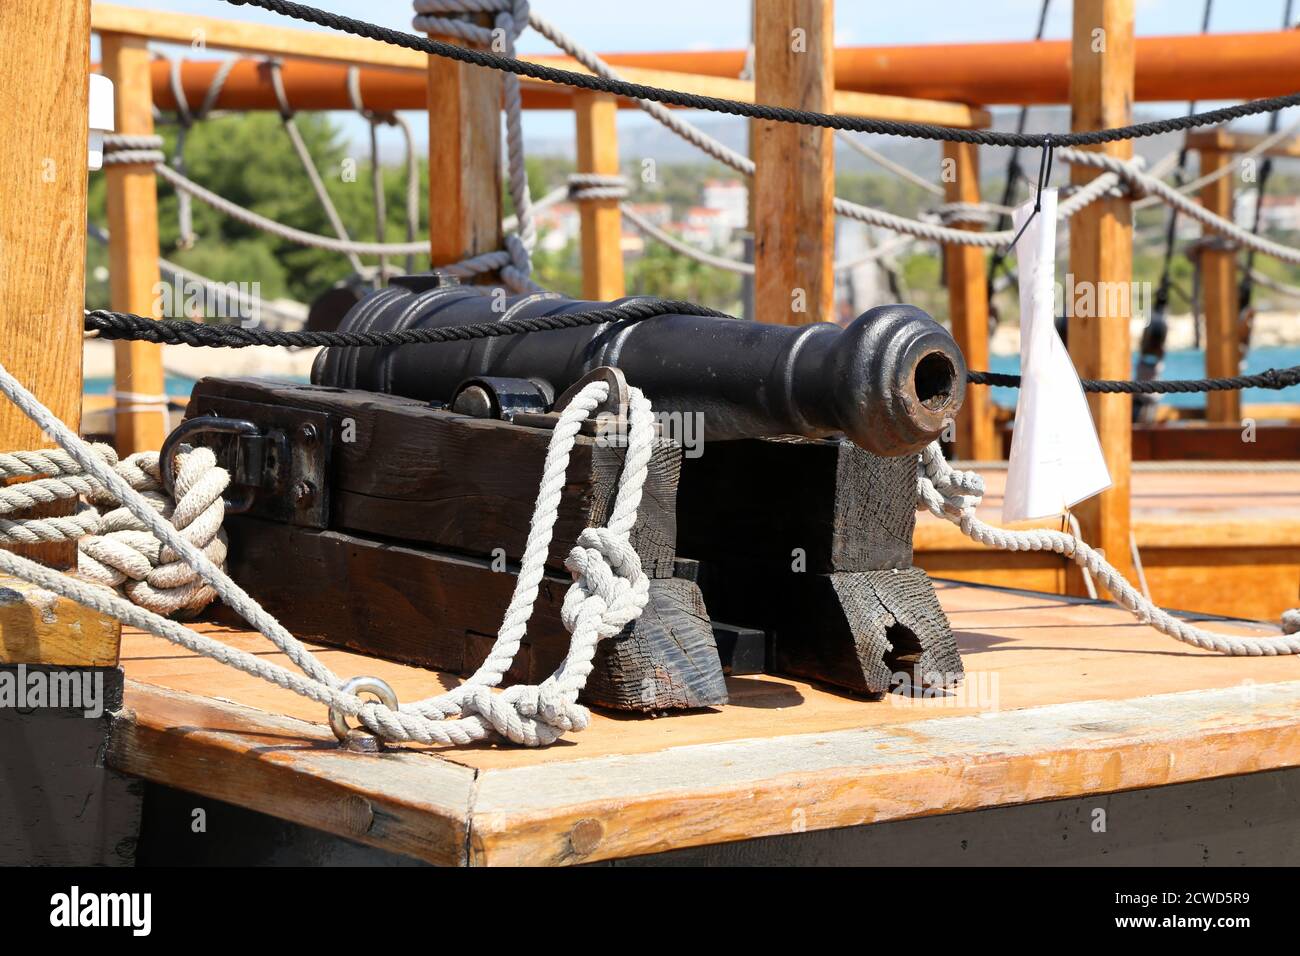 Ancien canon médiéval sur le pont d'un bateau pirate Photo Stock - Alamy